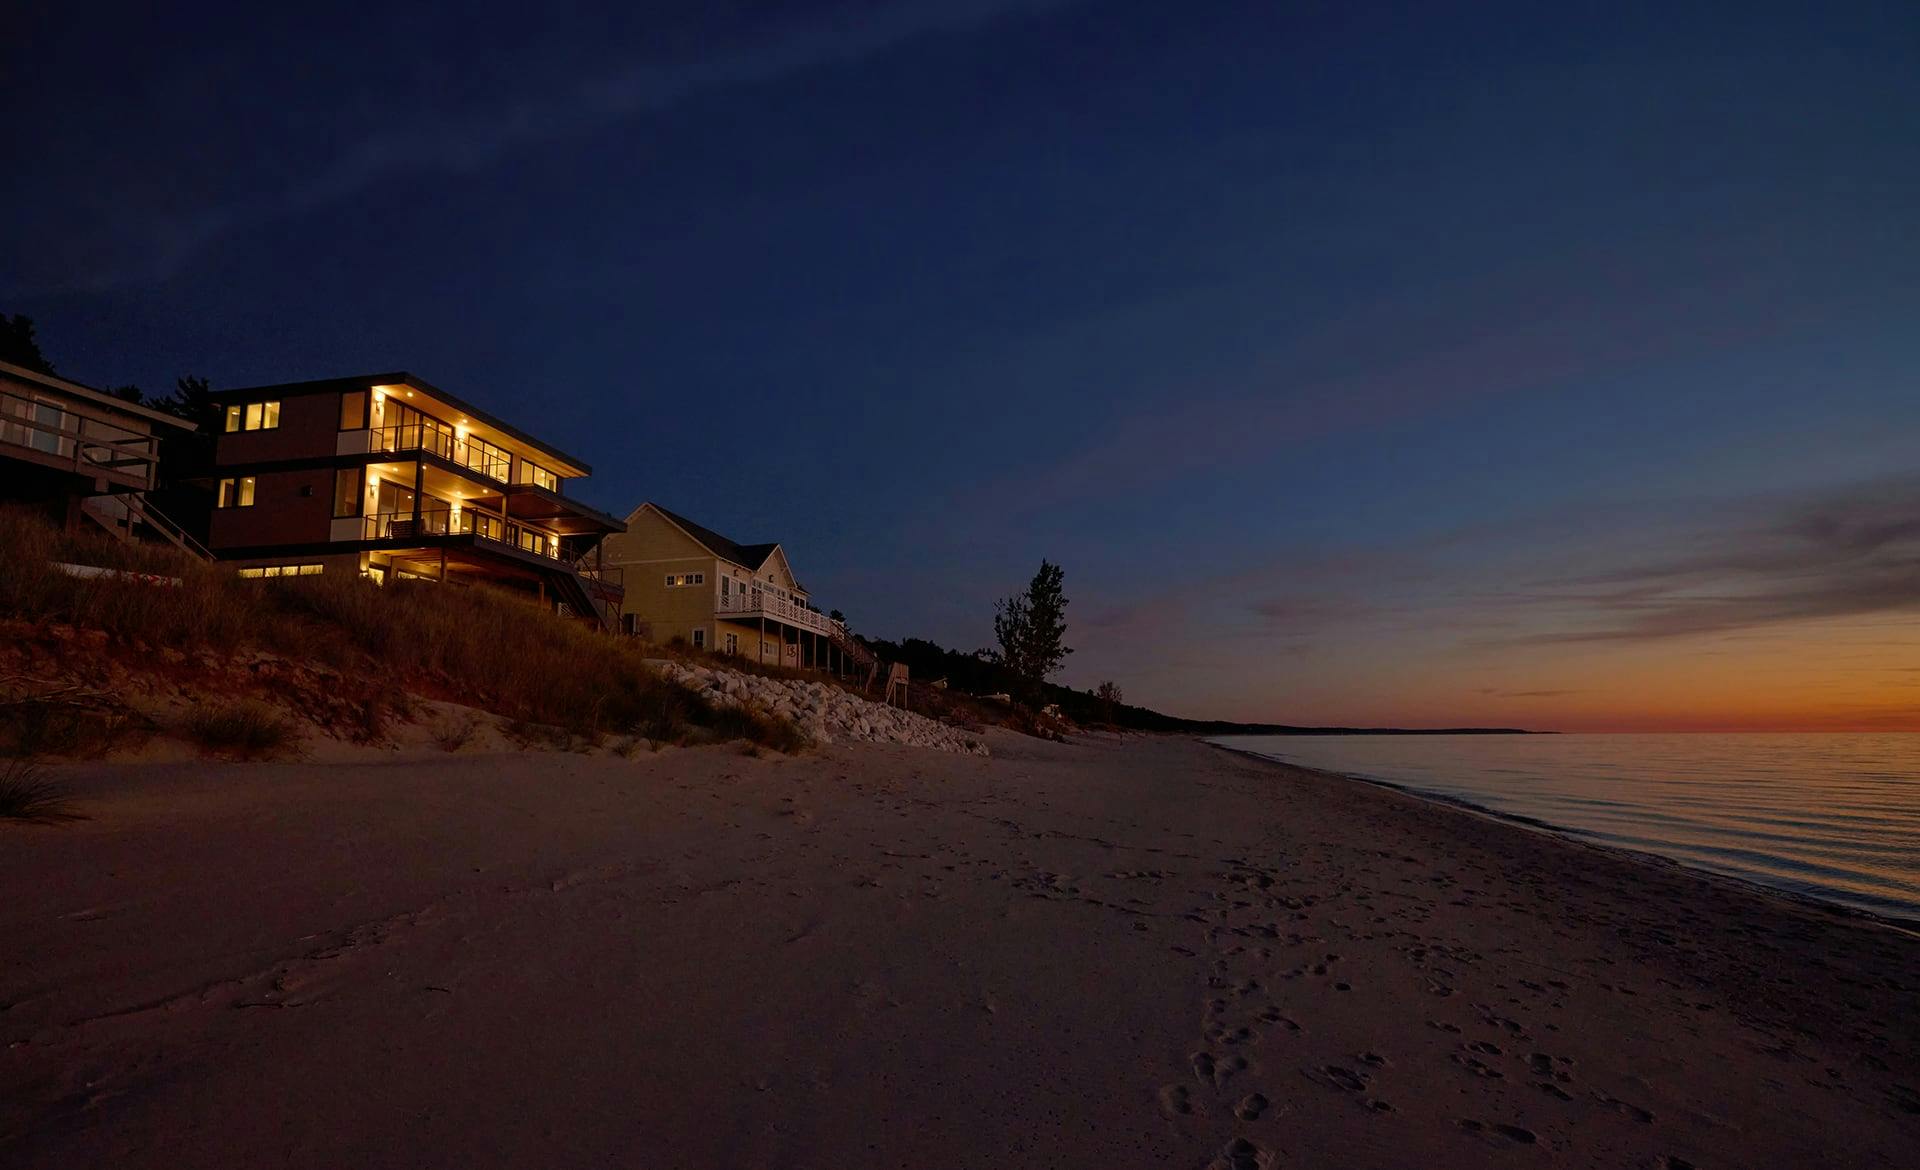 Lake Michigan Beach House beach at dusk